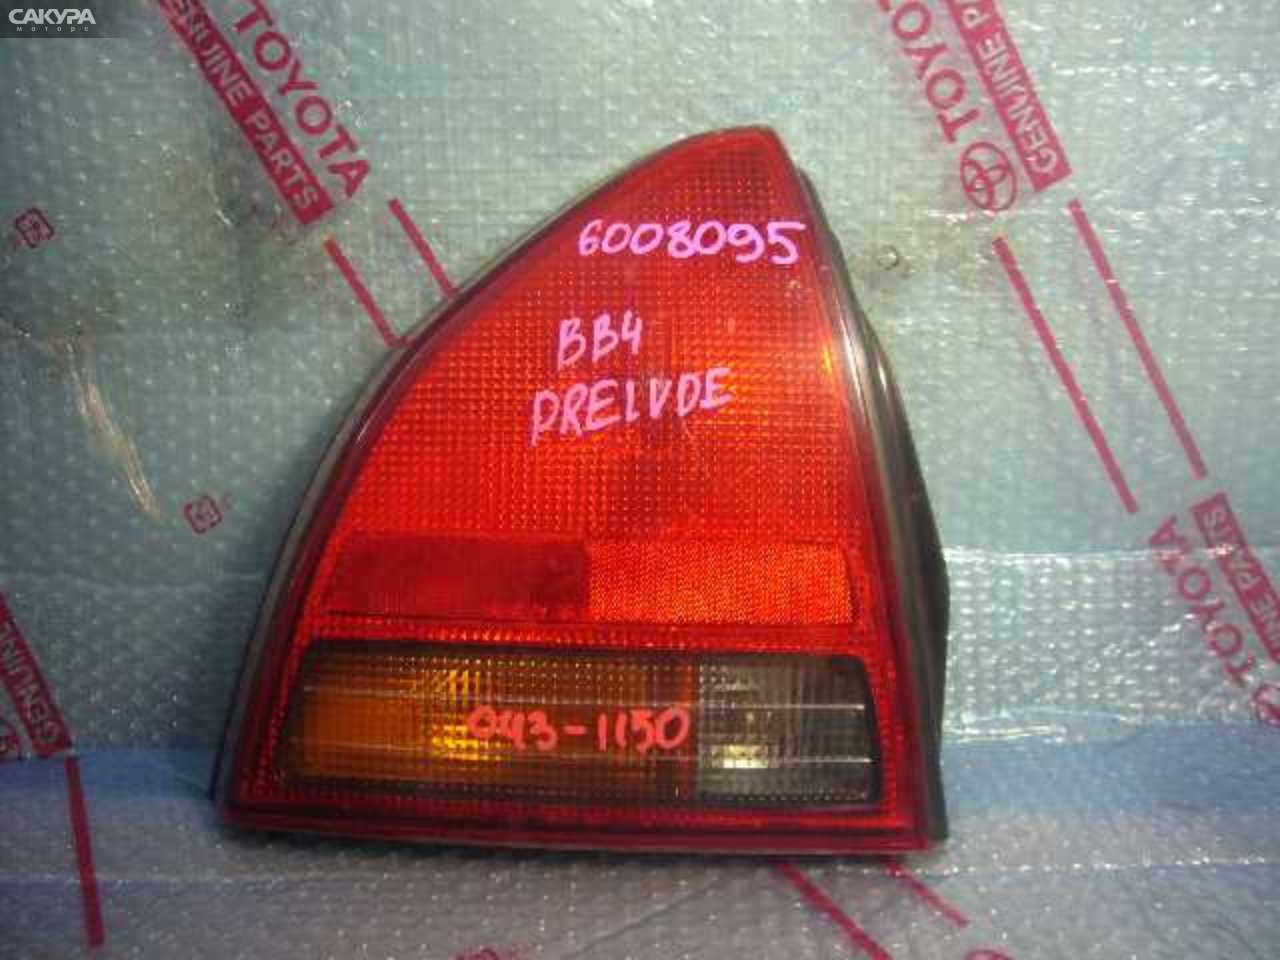 Фонарь стоп-сигнала левый Honda Prelude BB4 043-1150: купить в Сакура Кемерово.